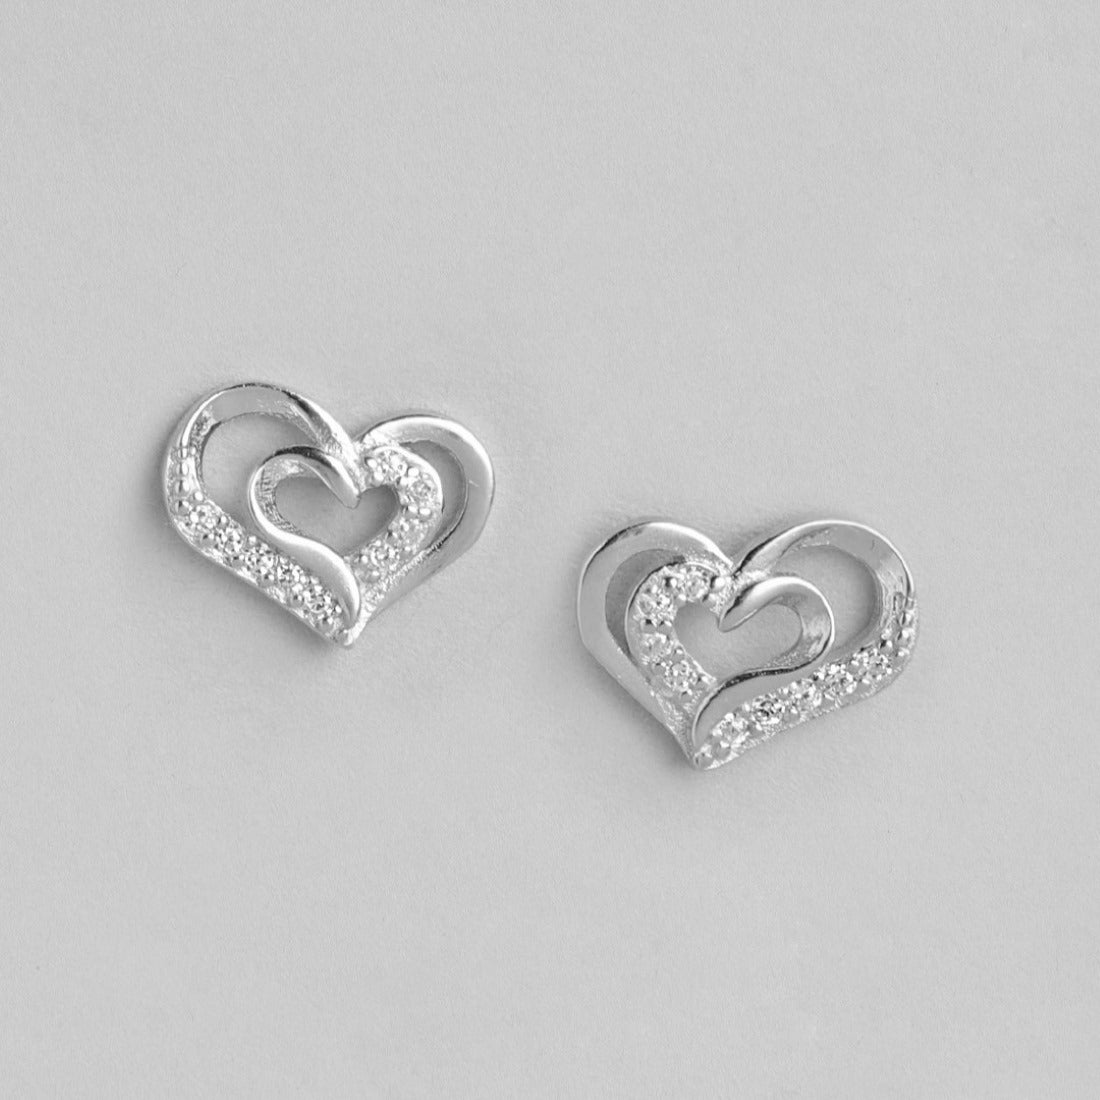 Heartfelt Radiance Rhodium Plated 925 Sterling Silver Heart Earrings